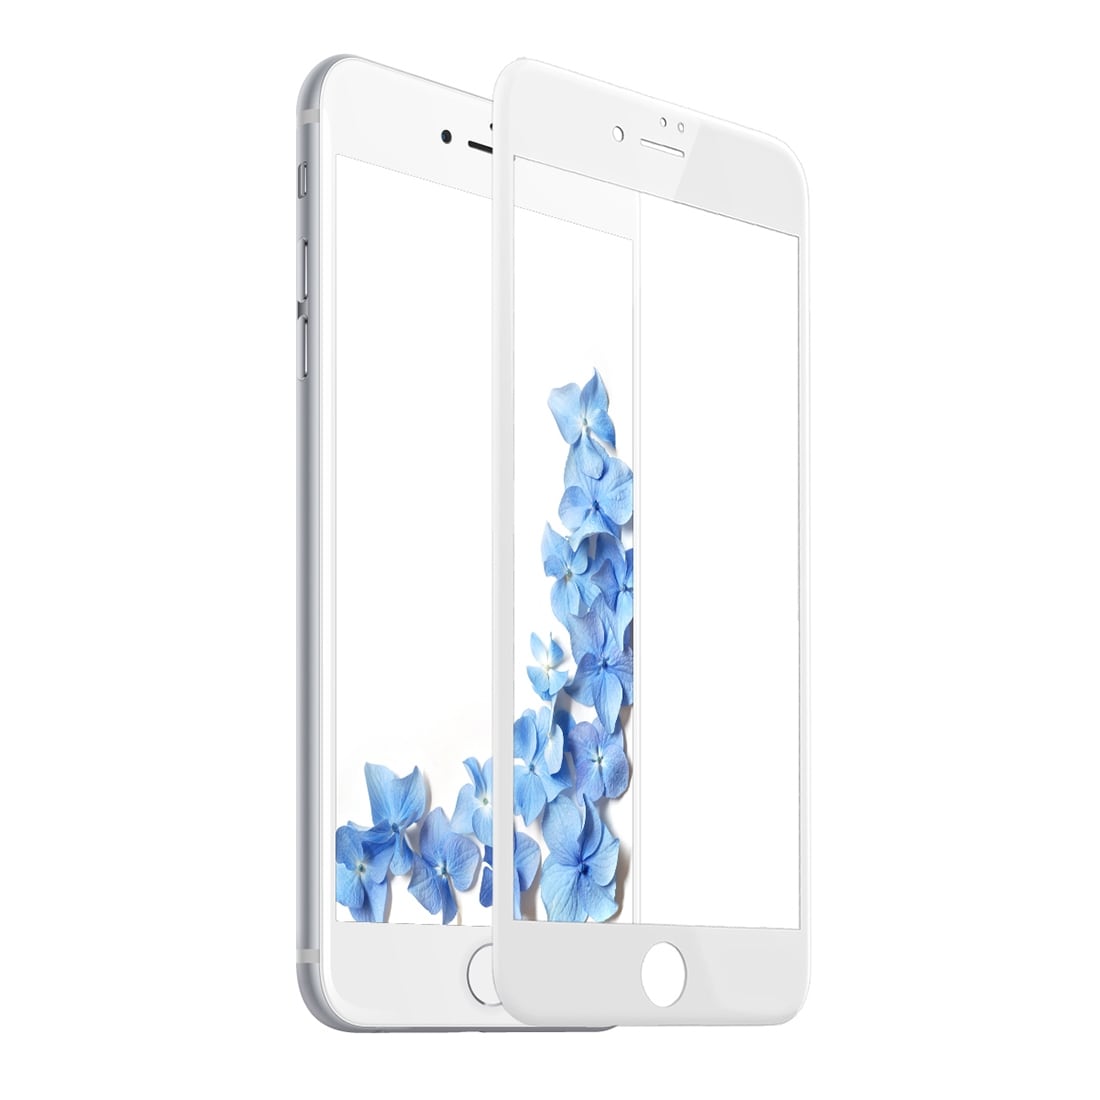 Baseus glasskydd iPhone 8 / 7 - Fullskärmsskydd Vit